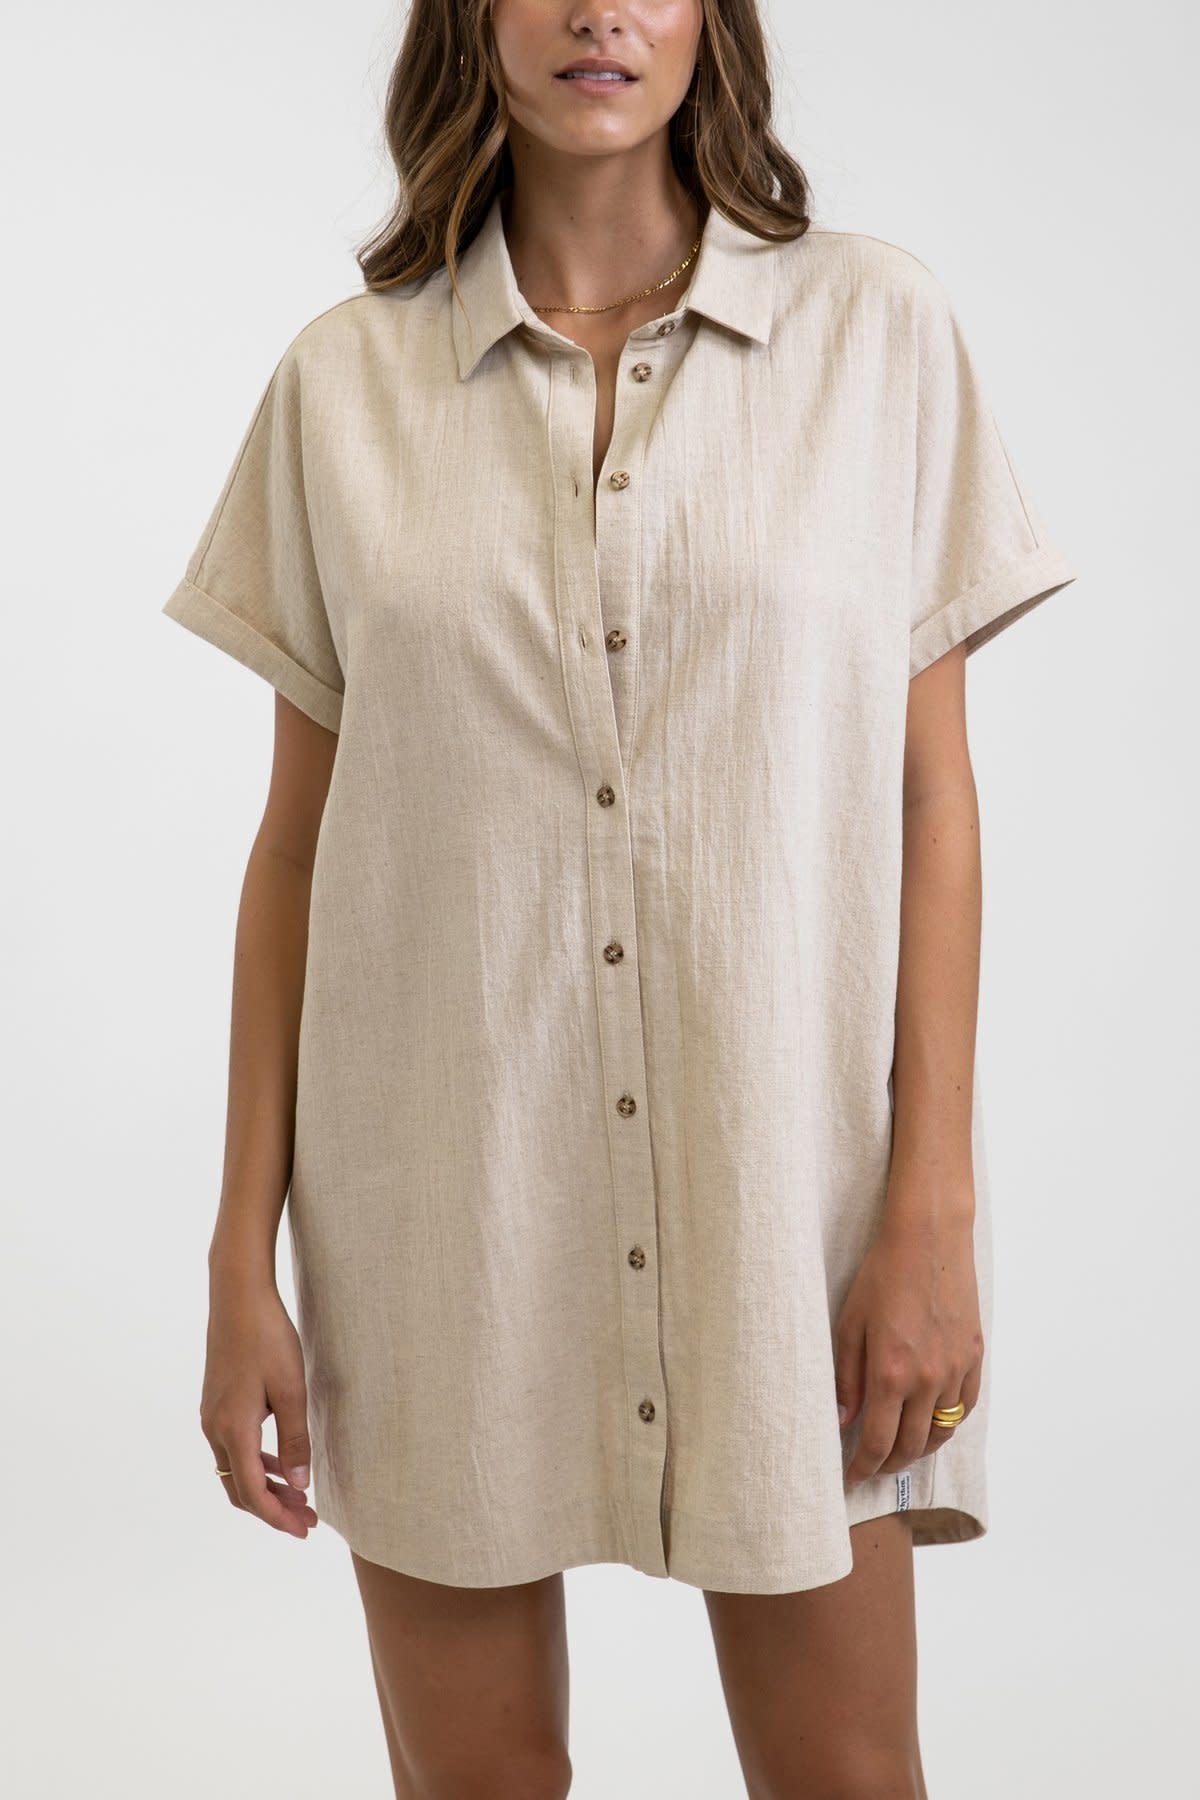 Classic Beige Linen Short Sleeve Shirt Dress